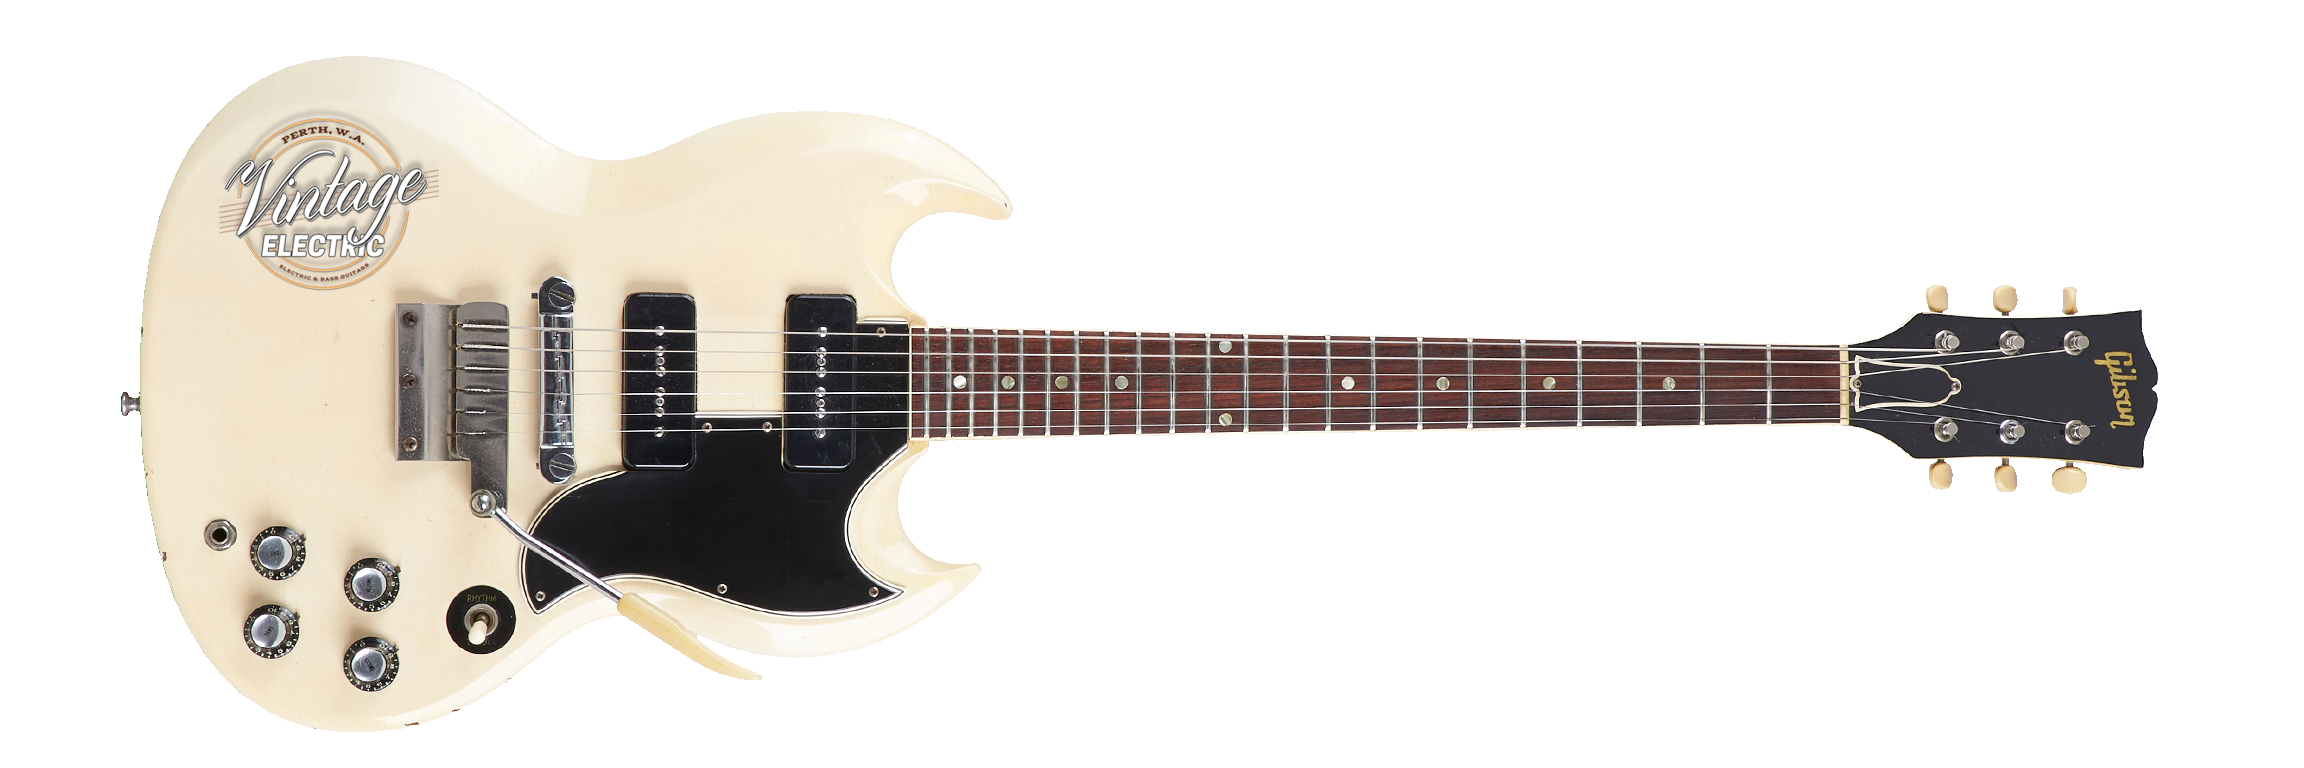 1965 Gibson SG Special Guitar